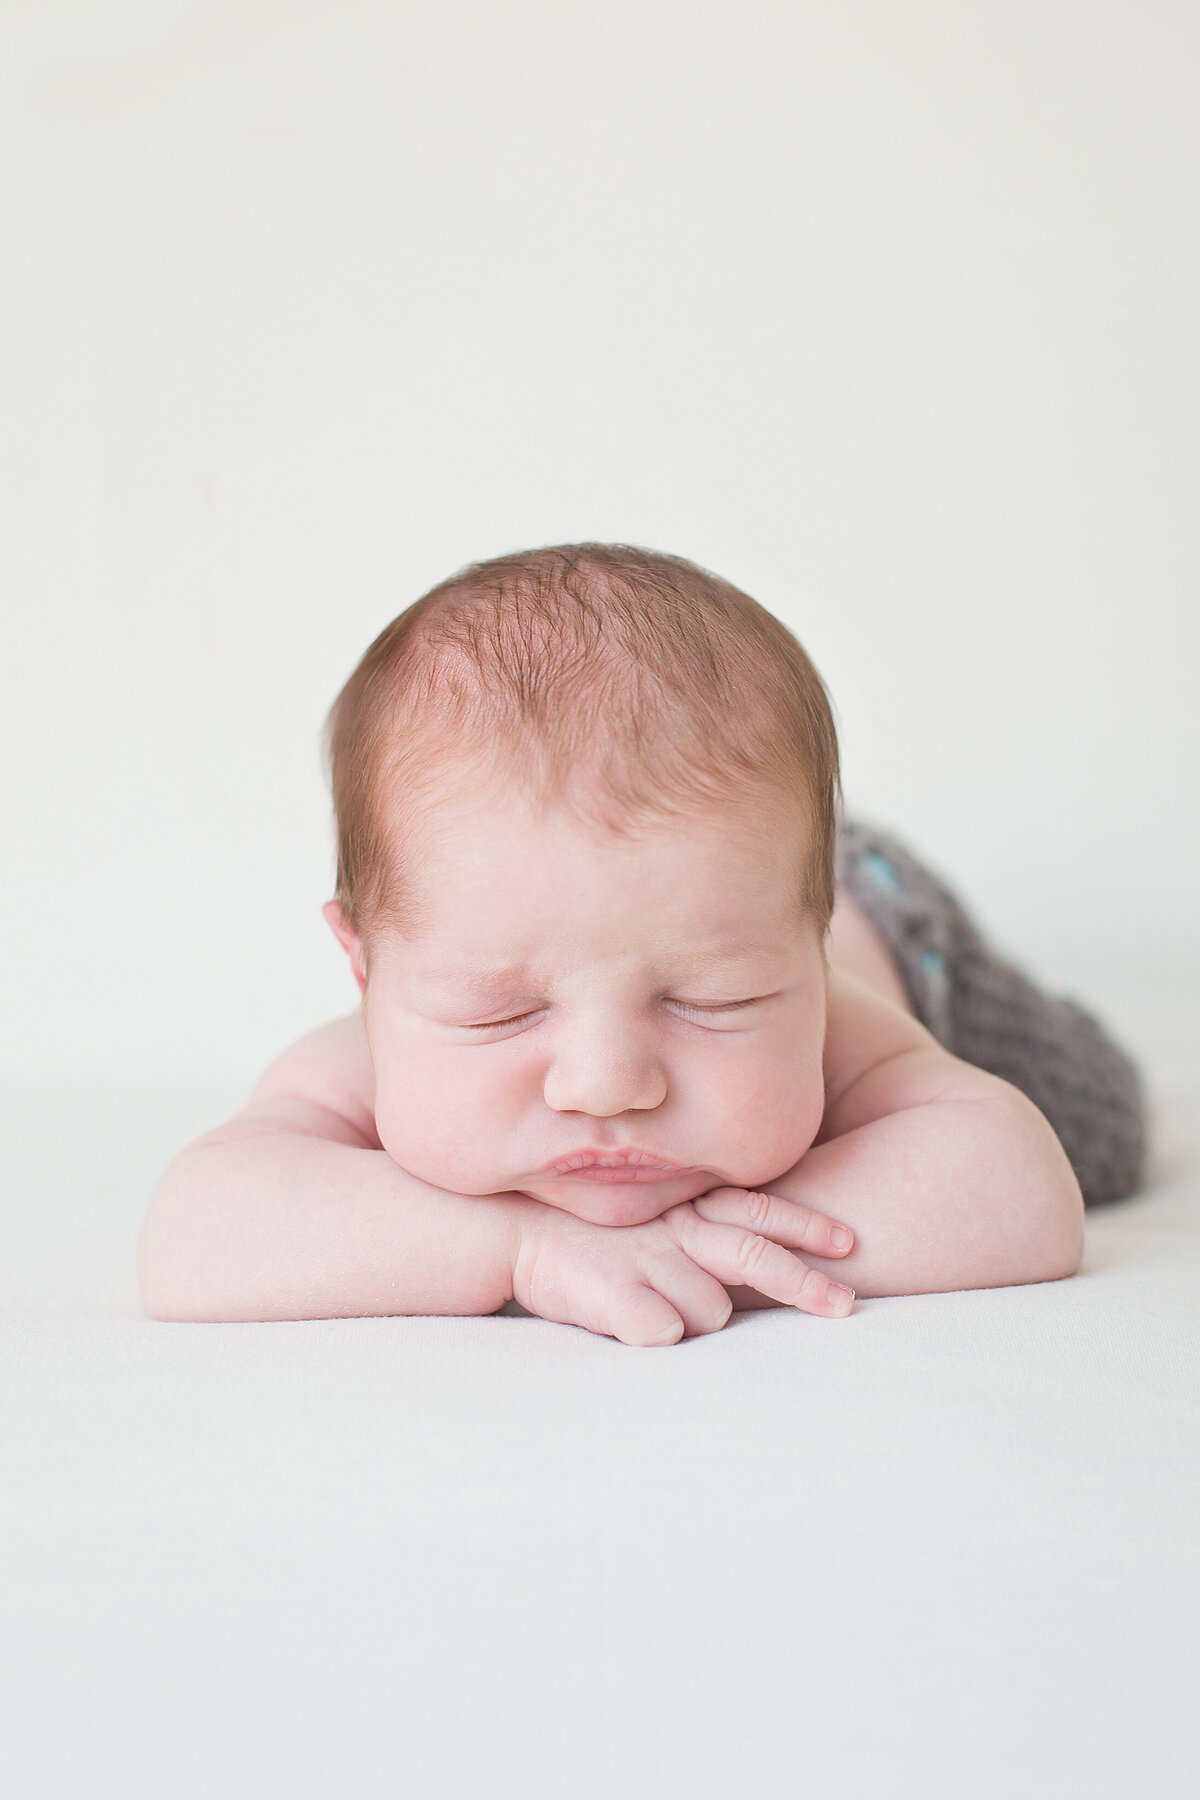 karen-halbert-photography-newborns